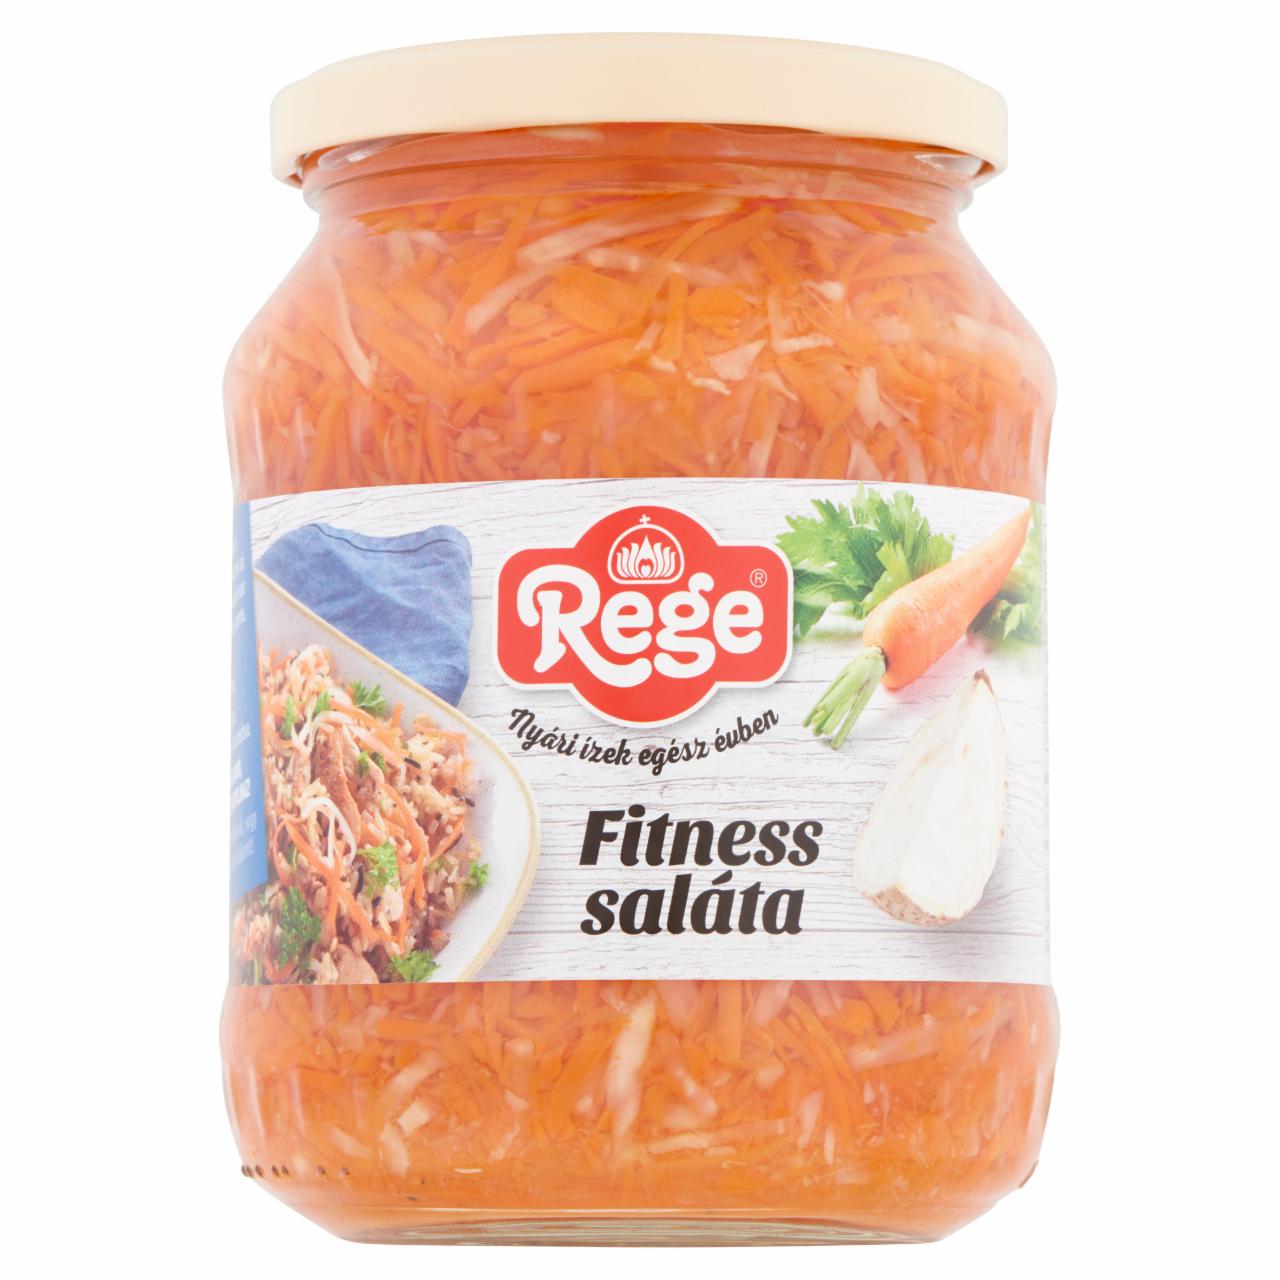 Képek - Rege fitness saláta 690 g